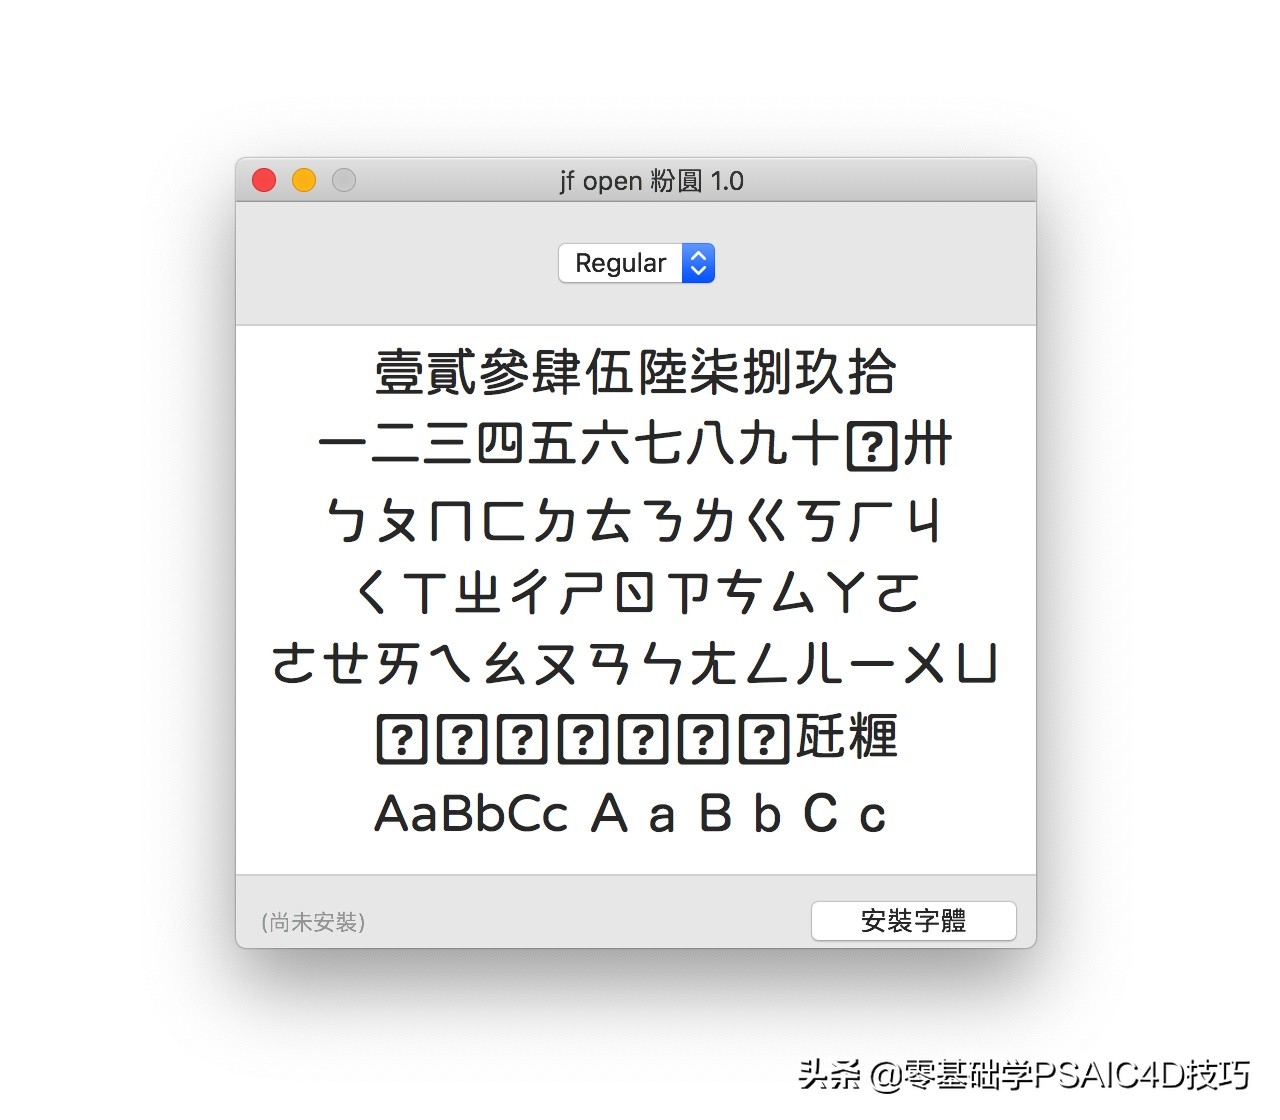 一款免费可商用的中文字体，Open 粉圆字体+商用儿童节字体